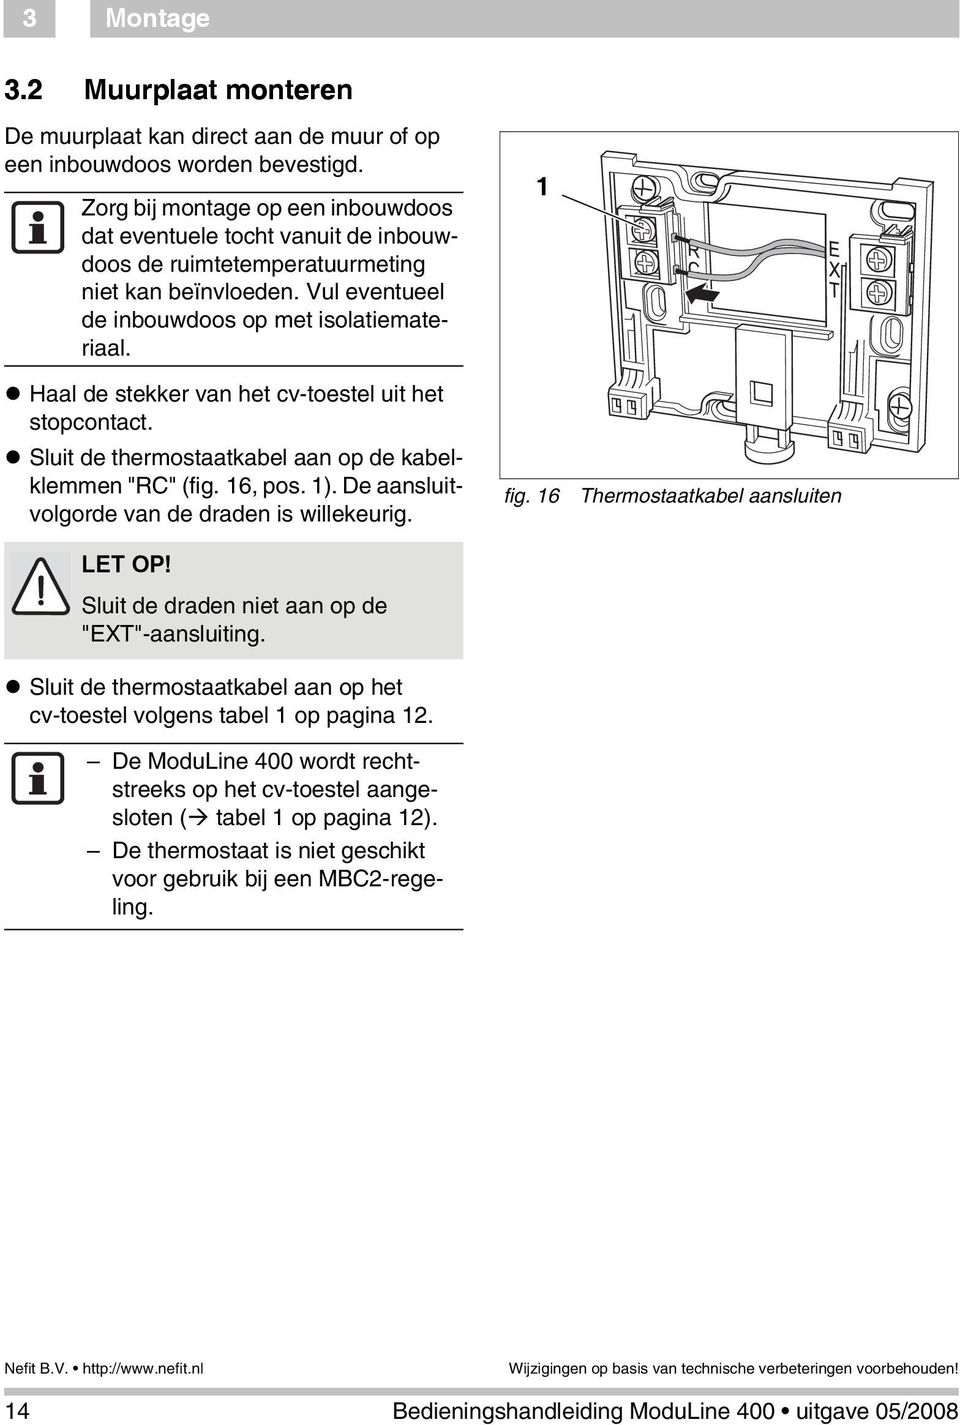 Haal de stekker van het cv-toestel uit het stopcontact. Sluit de thermostaatkabel aan op de kabelklemmen "RC" (fig. 16, pos. 1). De aansluitvolgorde van de draden is willekeurig. LET OP!